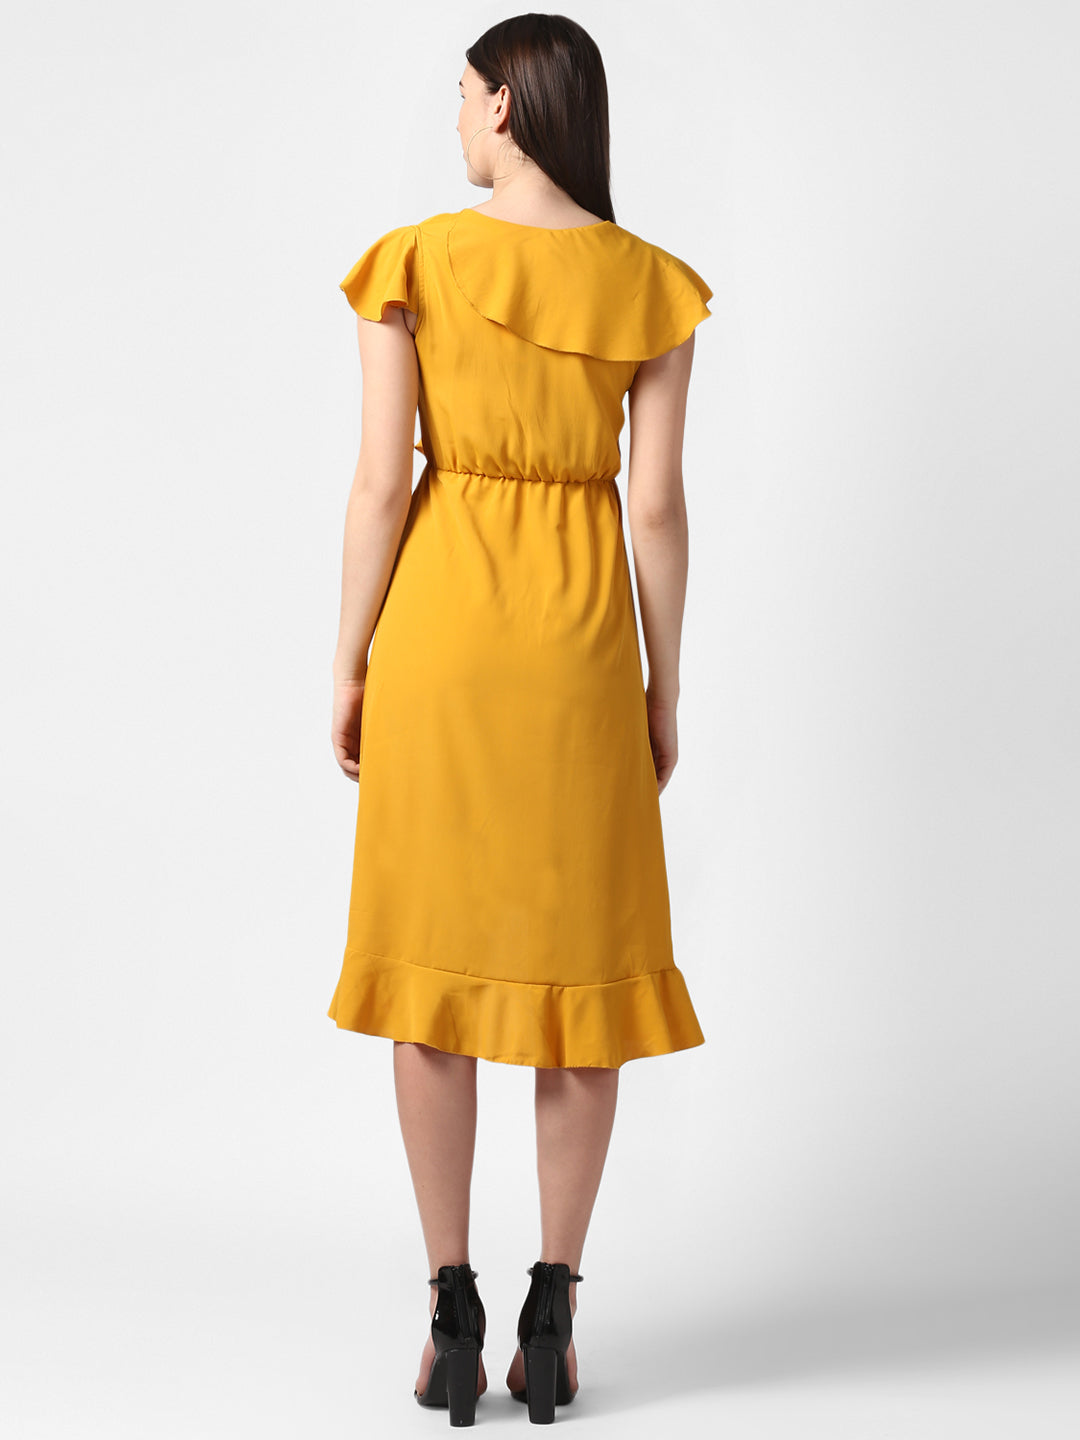 Women's Yellow Front Ruffle Dress